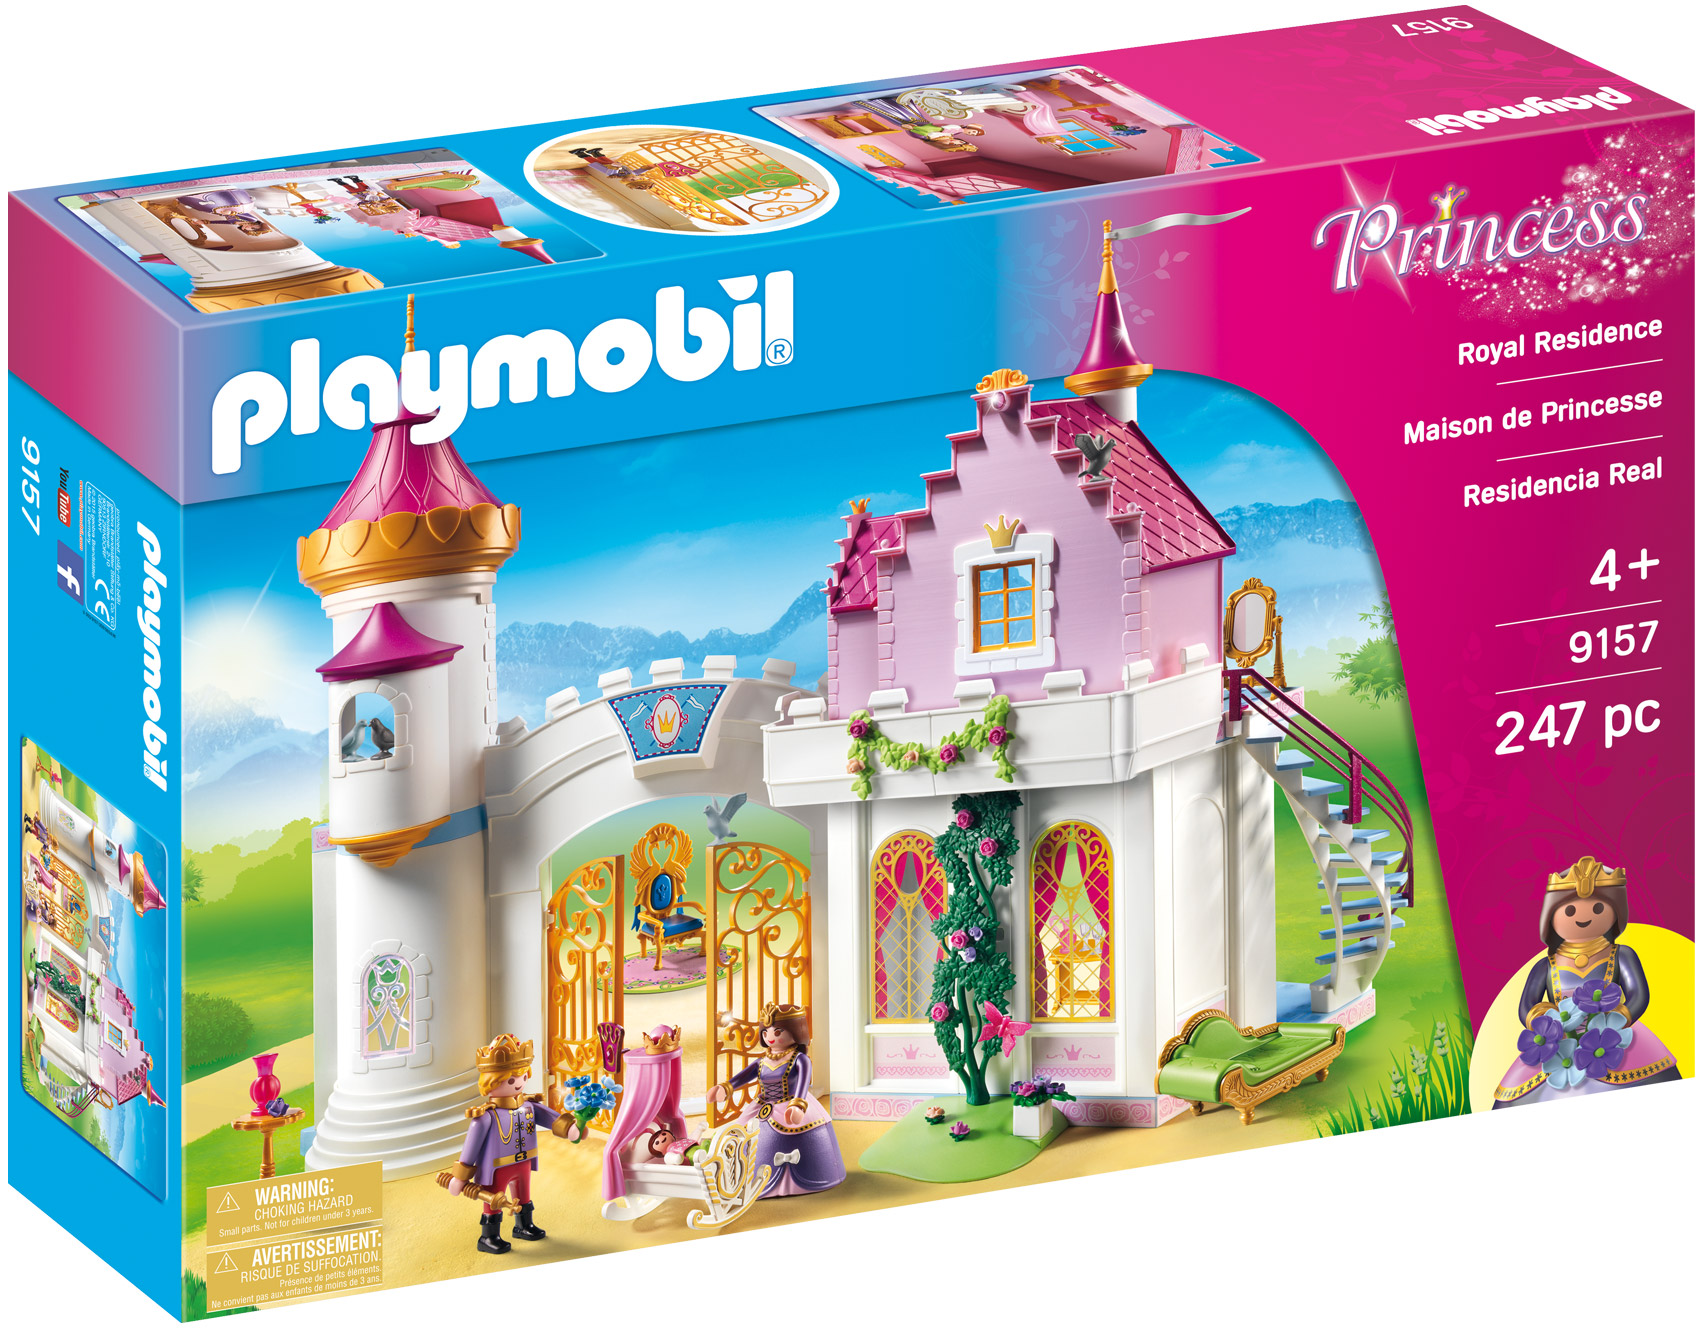 Playmobil Princess 9157 pas cher, Maison de princesse